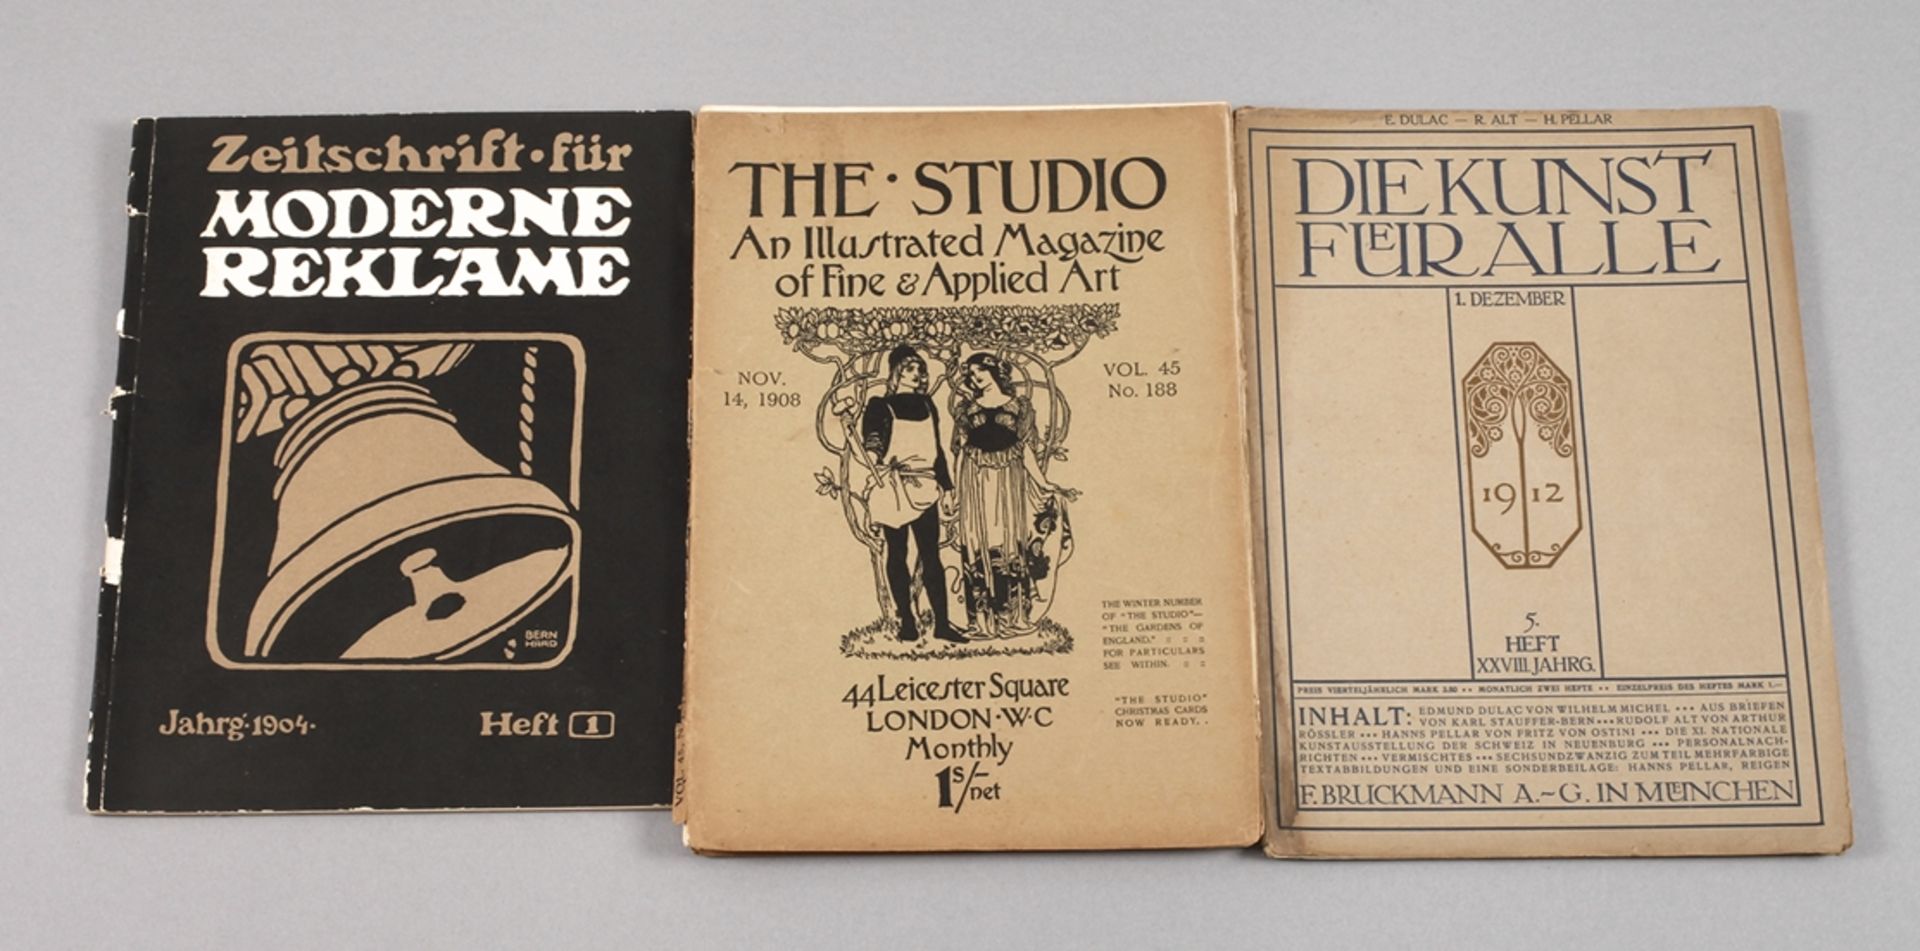 Drei Kunstzeitschriften JugendstilZeitschrift für Moderne Reklame, Heft 1, 1904. - The Studio, an